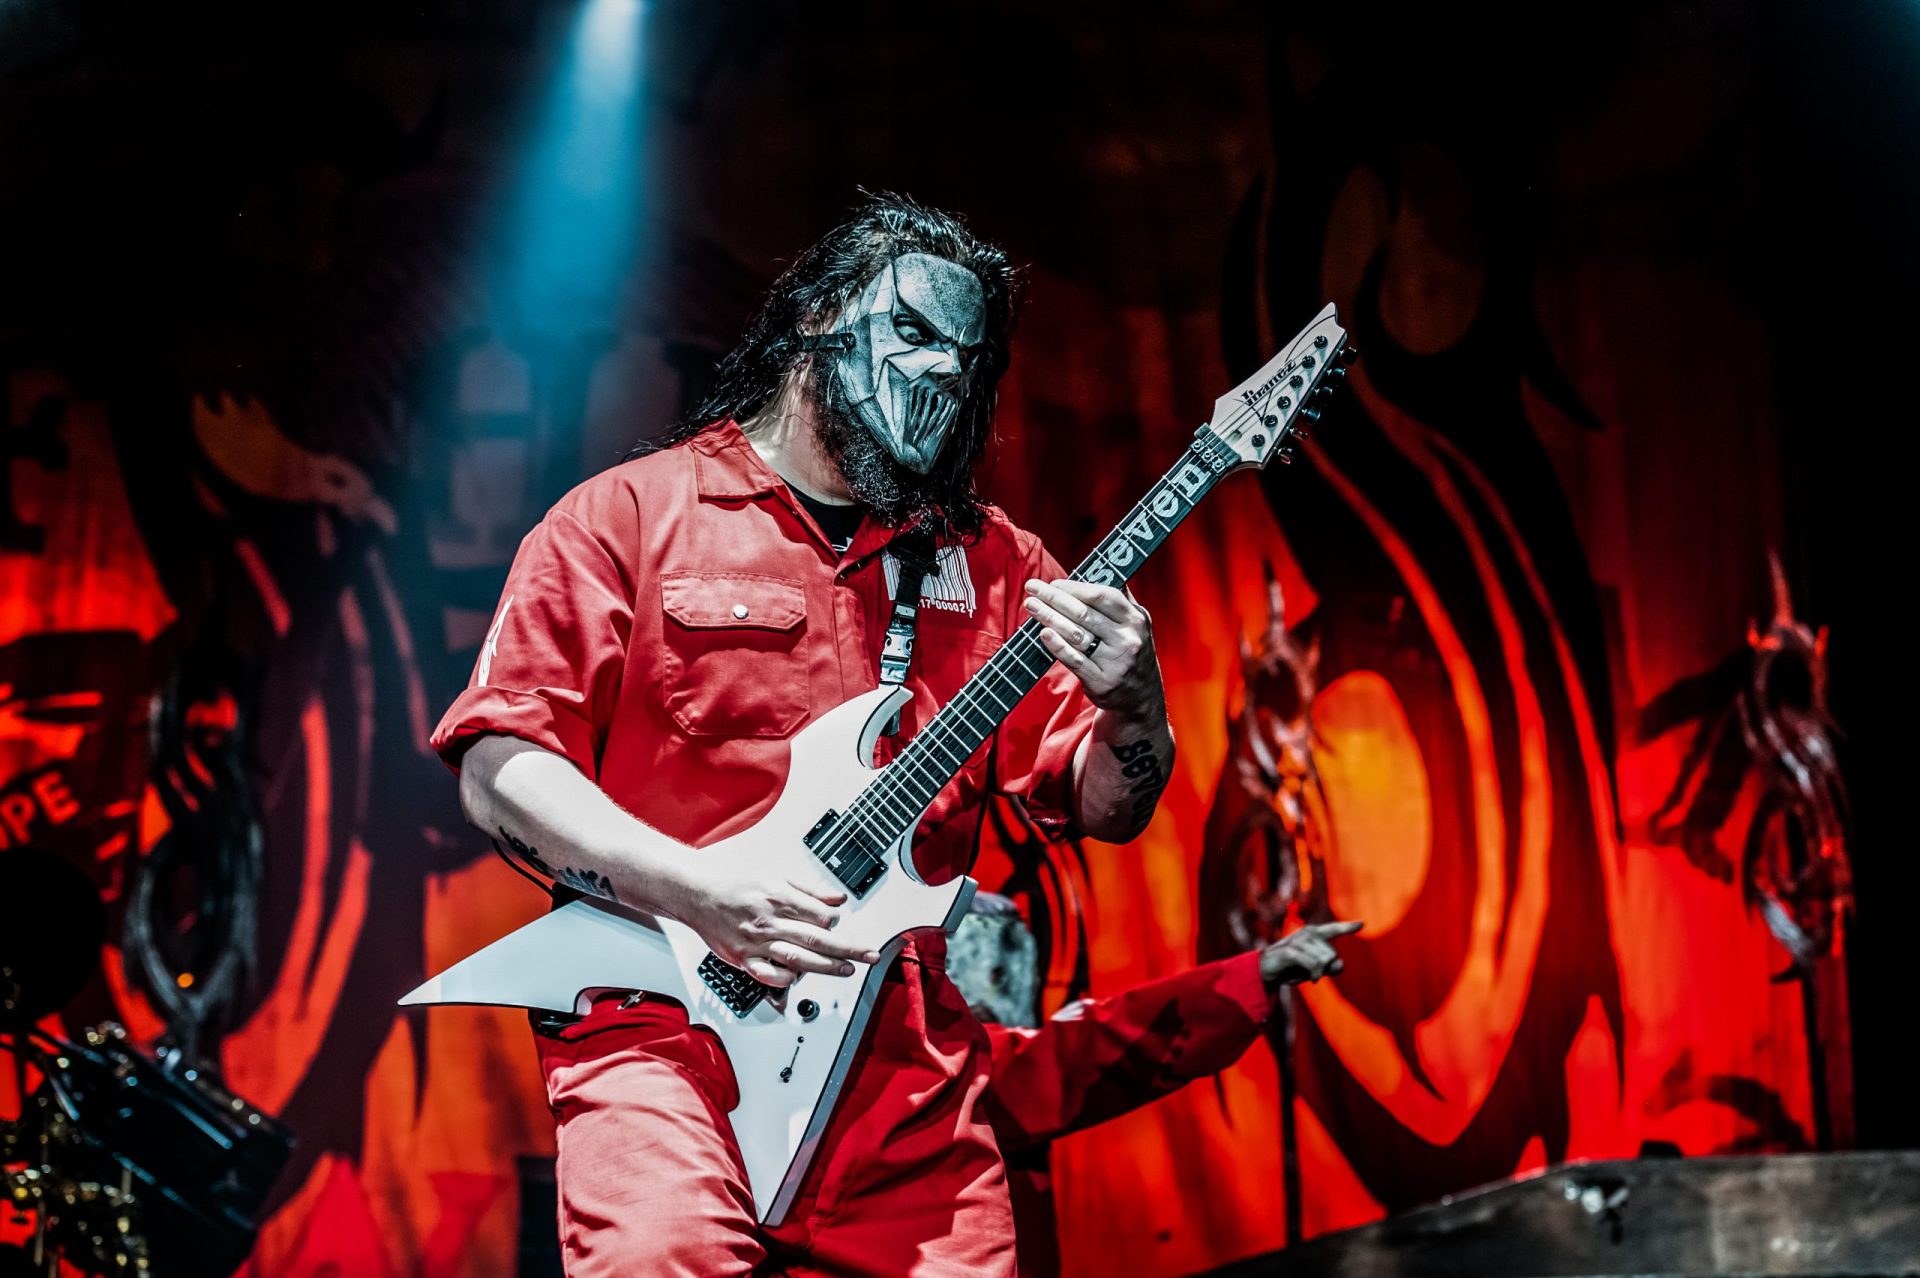 Guitarrista dos Slipknot esfaqueado pelo irmão